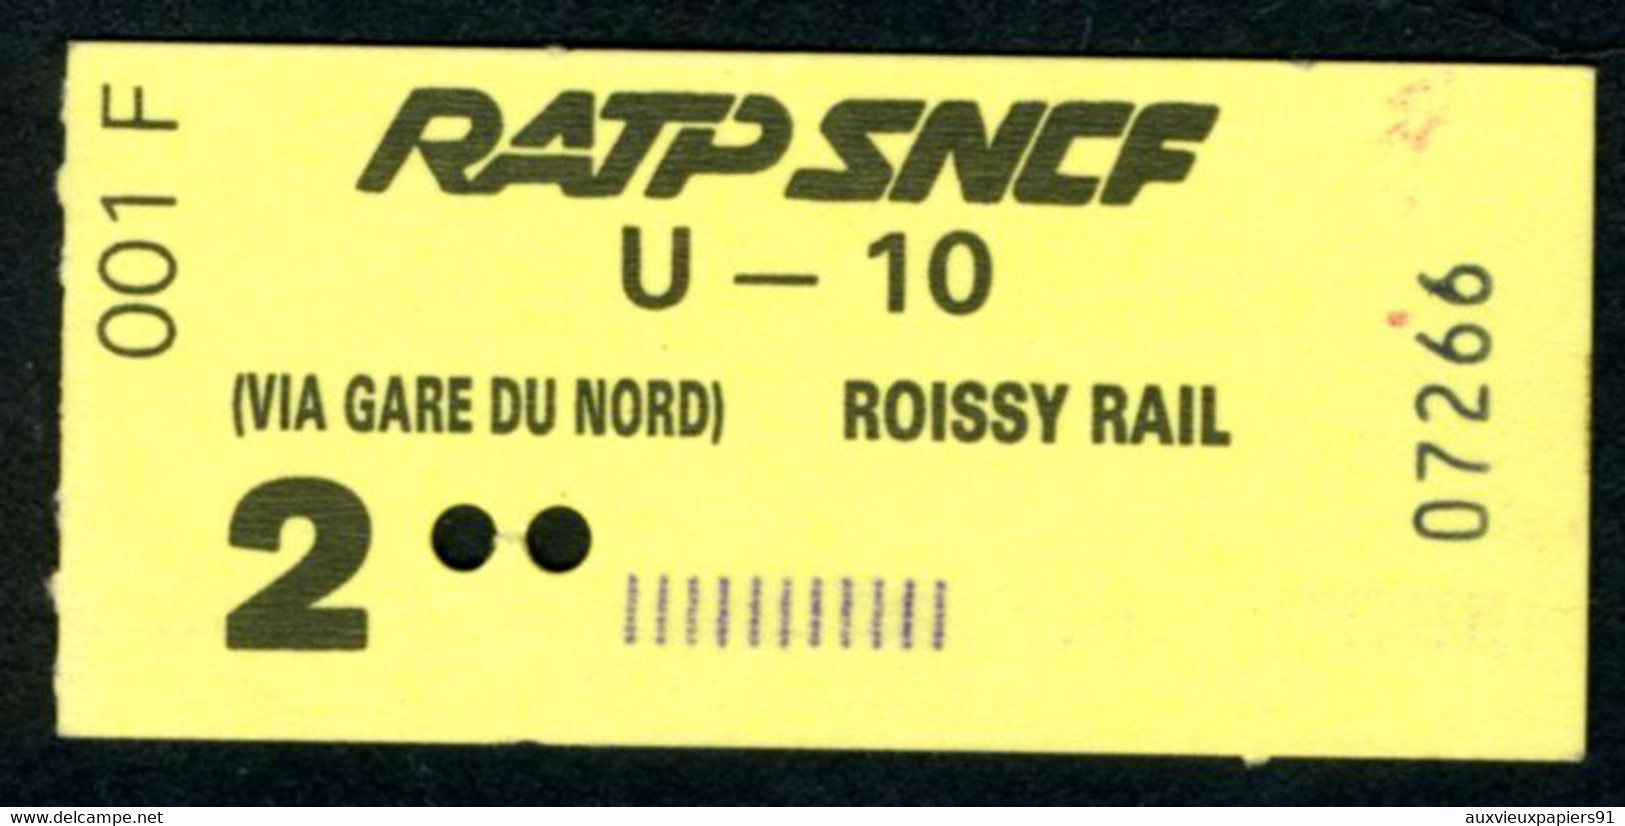 Métro - RATP-SNCF - RER - 2 ème Classe - Titre D'agent - U-10 - Type 001 F - Peu Commun - Europe